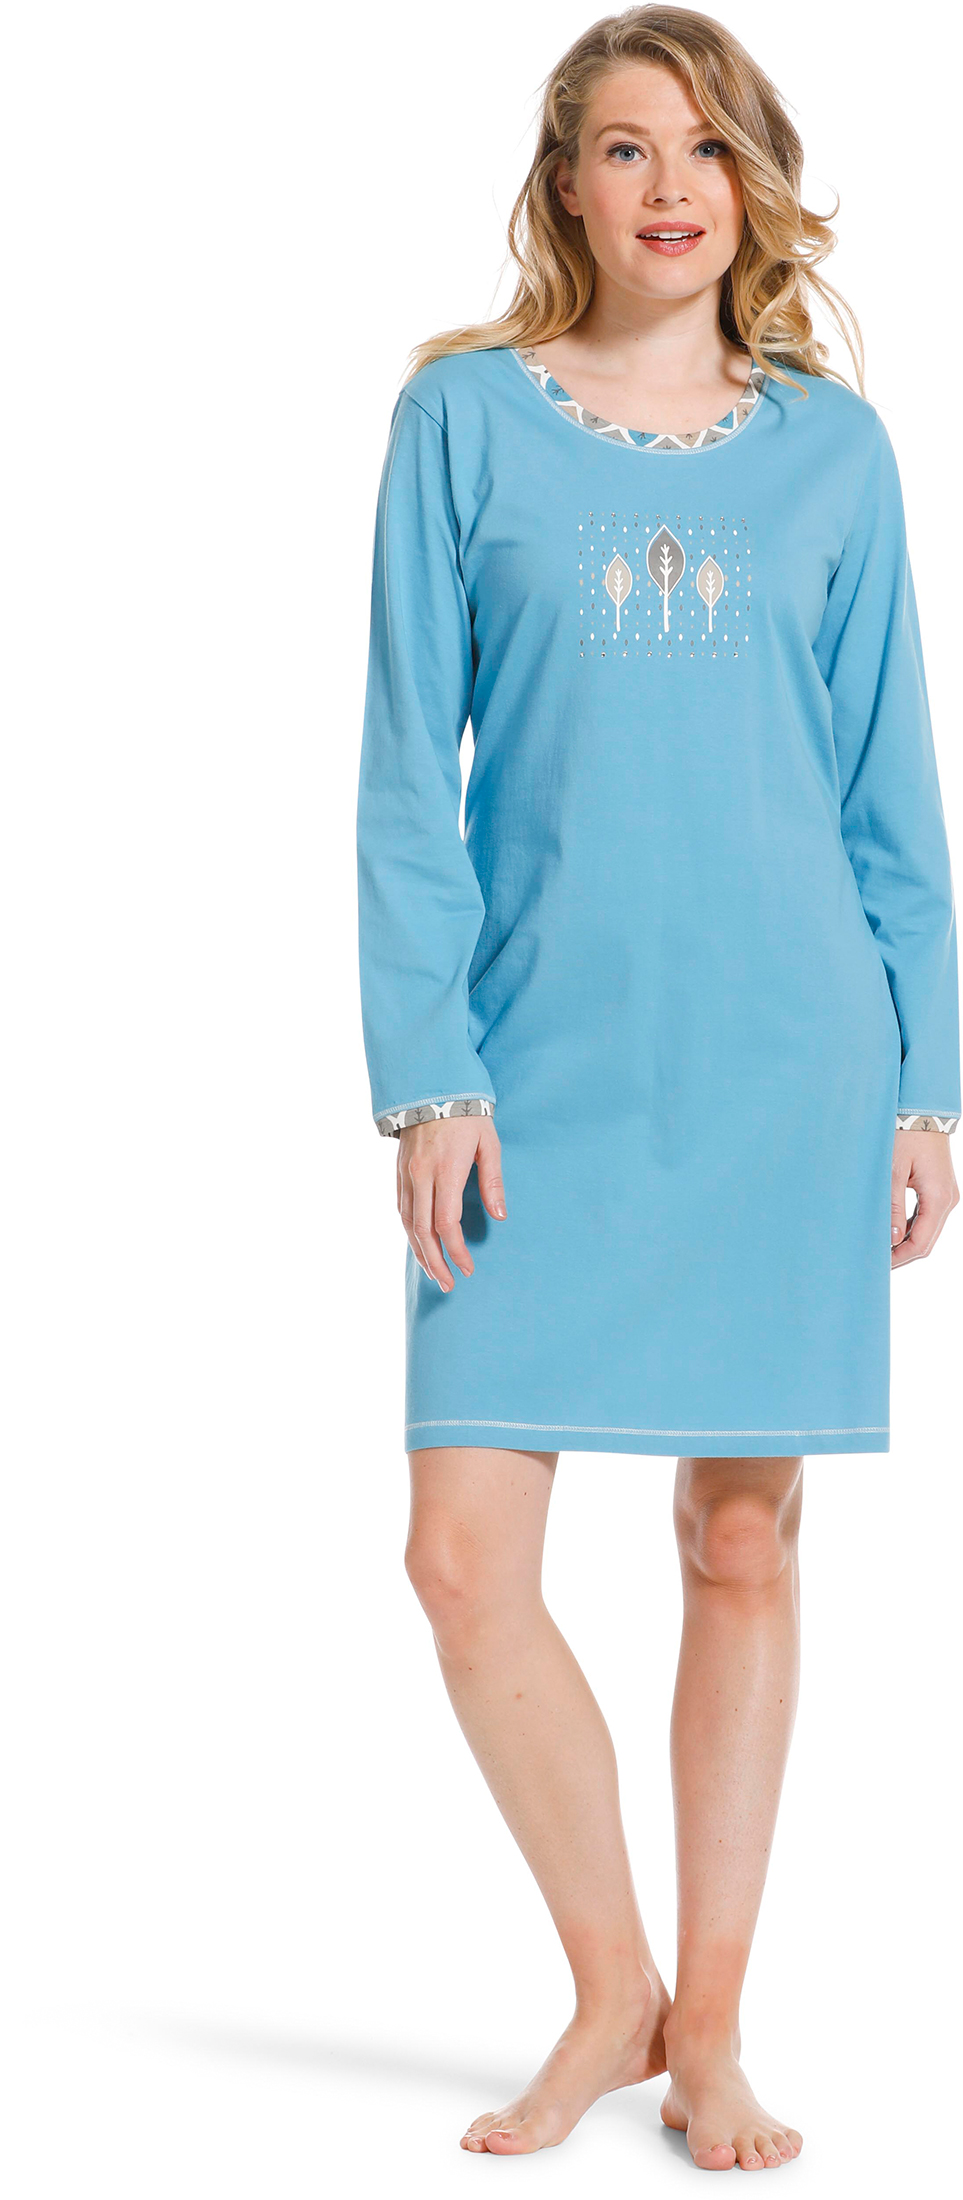 Pastunette dames nachthemd 10222-138-2 - Blauw - 42